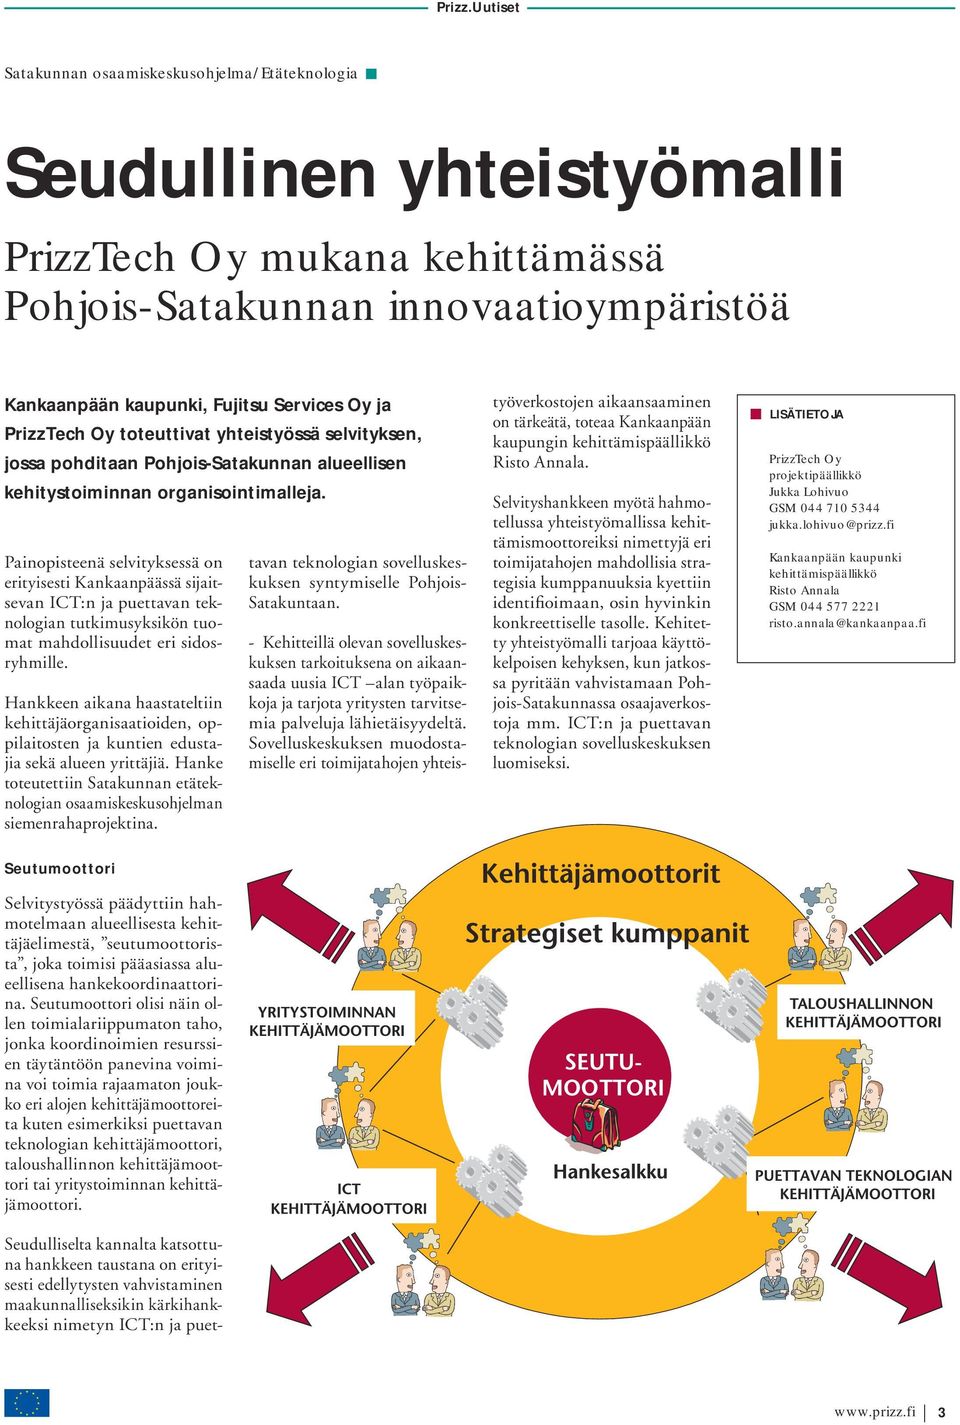 Painopisteenä selvityksessä on erityisesti Kankaanpäässä sijaitsevan ICT:n ja puettavan teknologian tutkimusyksikön tuomat mahdollisuudet eri sidosryhmille.